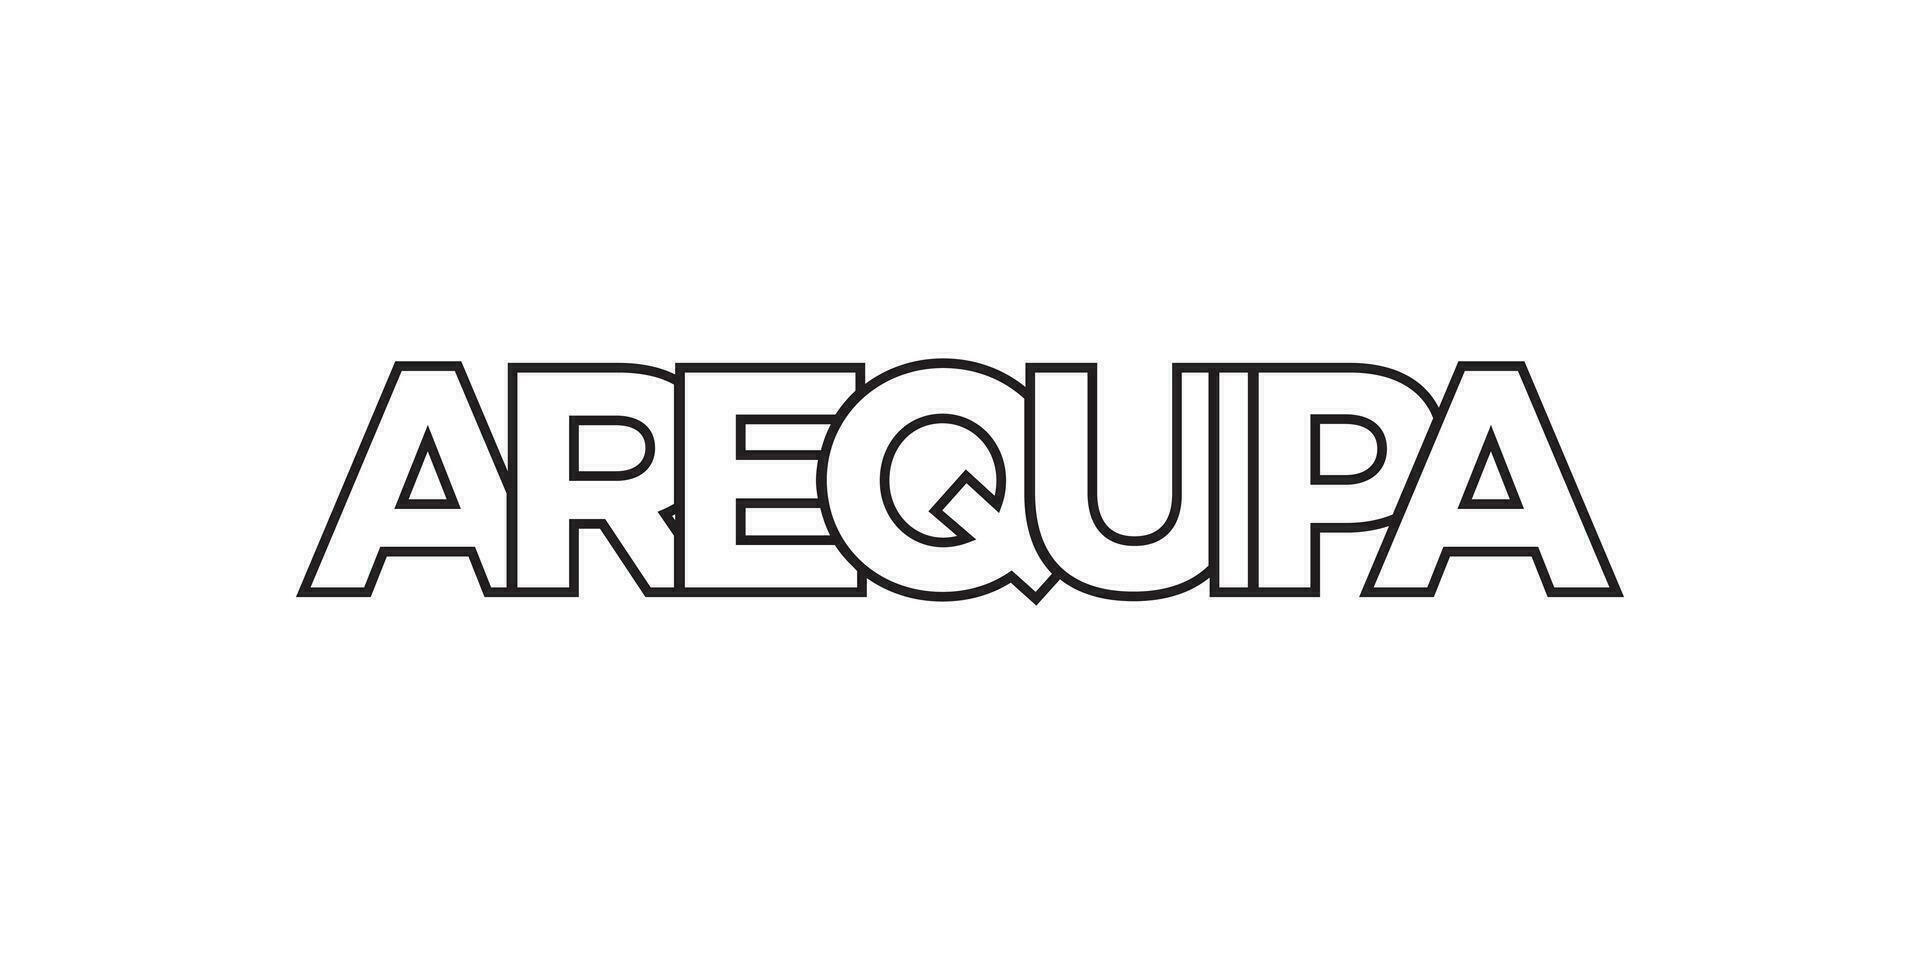 Arequipa dans le Pérou emblème. le conception Caractéristiques une géométrique style, vecteur illustration avec audacieux typographie dans une moderne Police de caractère. le graphique slogan caractères.